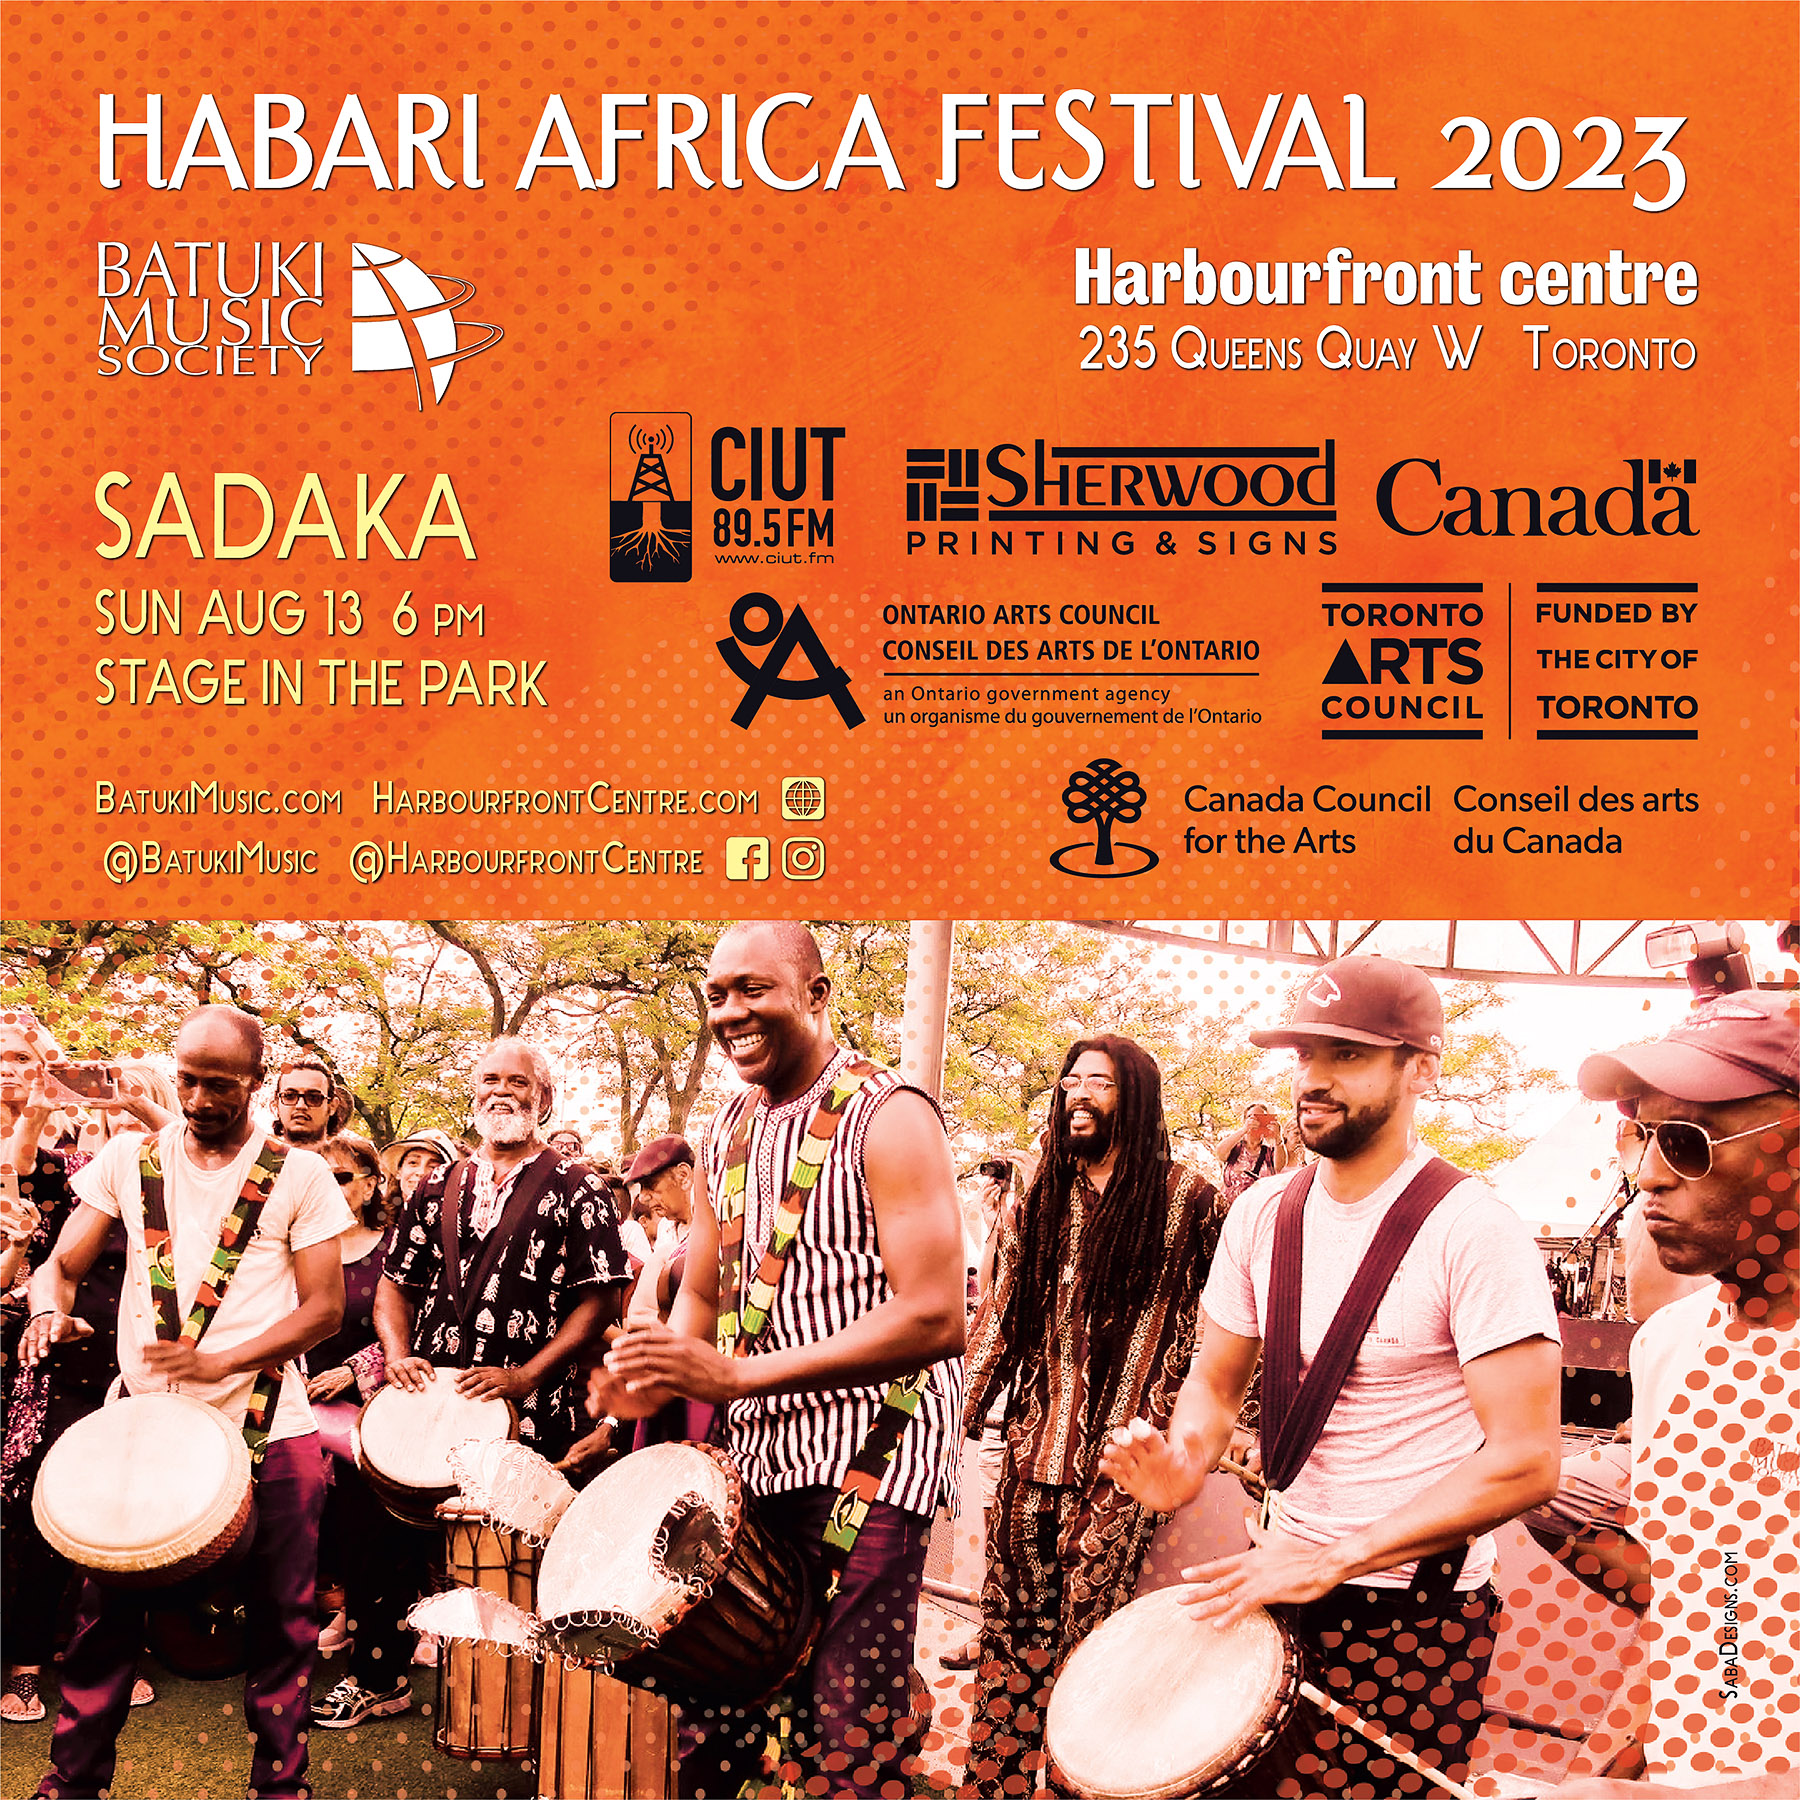 Habari Africa Live Festival 2023 by Batuki Music Society Sadaka